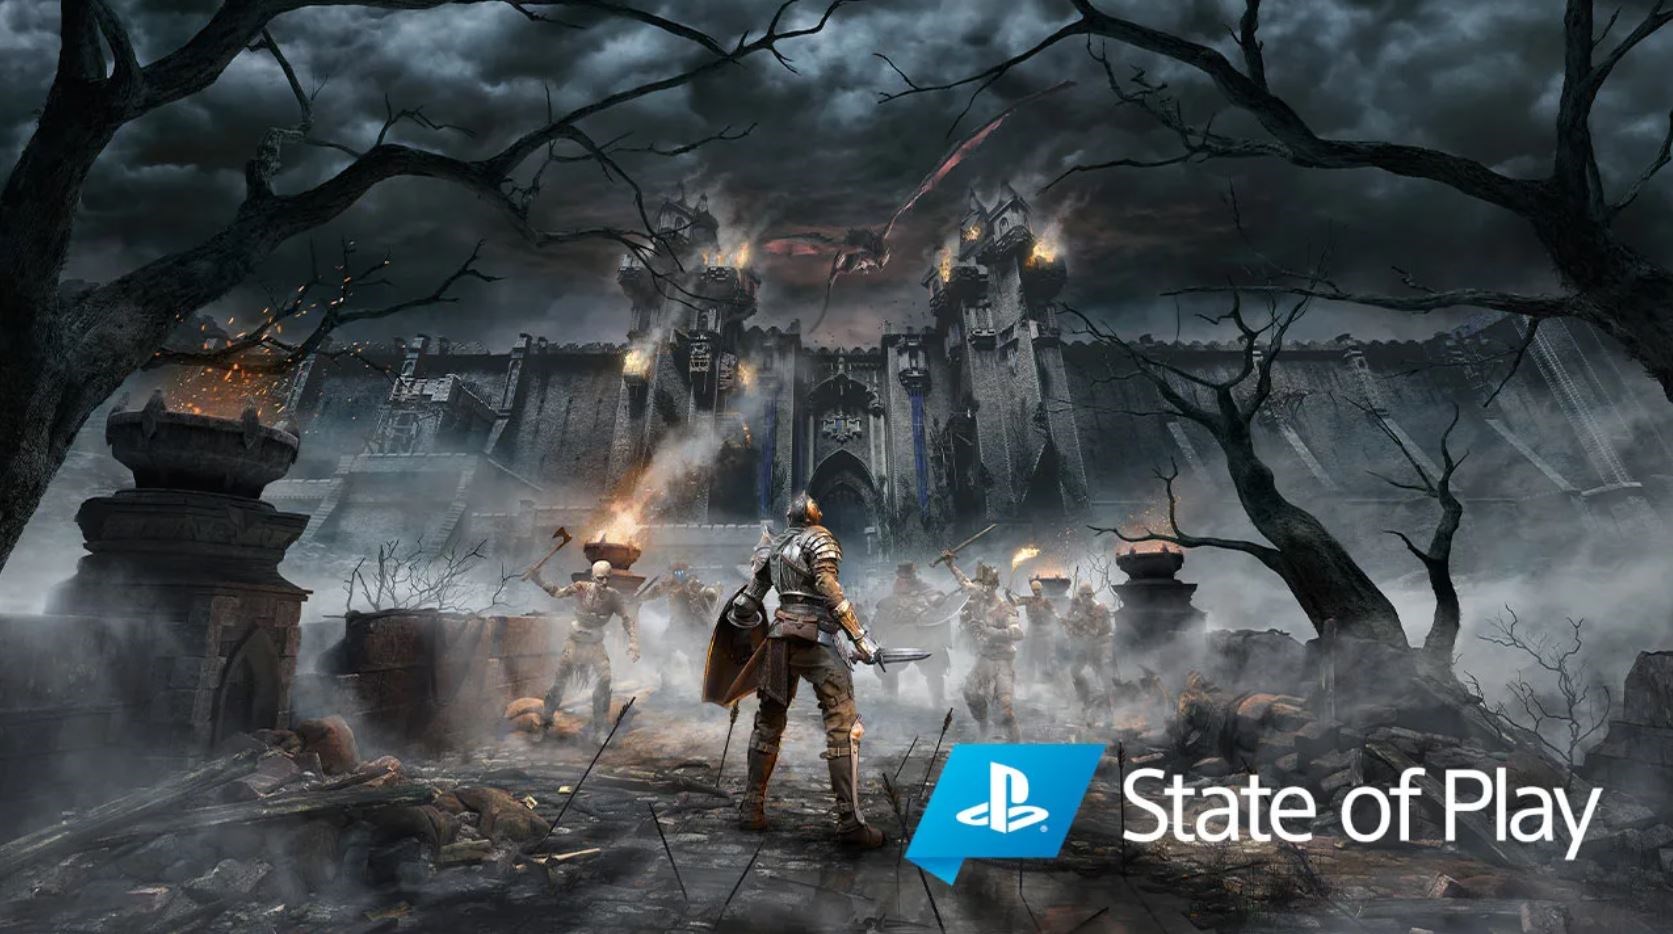 PS5'in en heyecanla beklenen oyunu Demon's Souls'tan 4K 60FPS oynanış görüntüleri